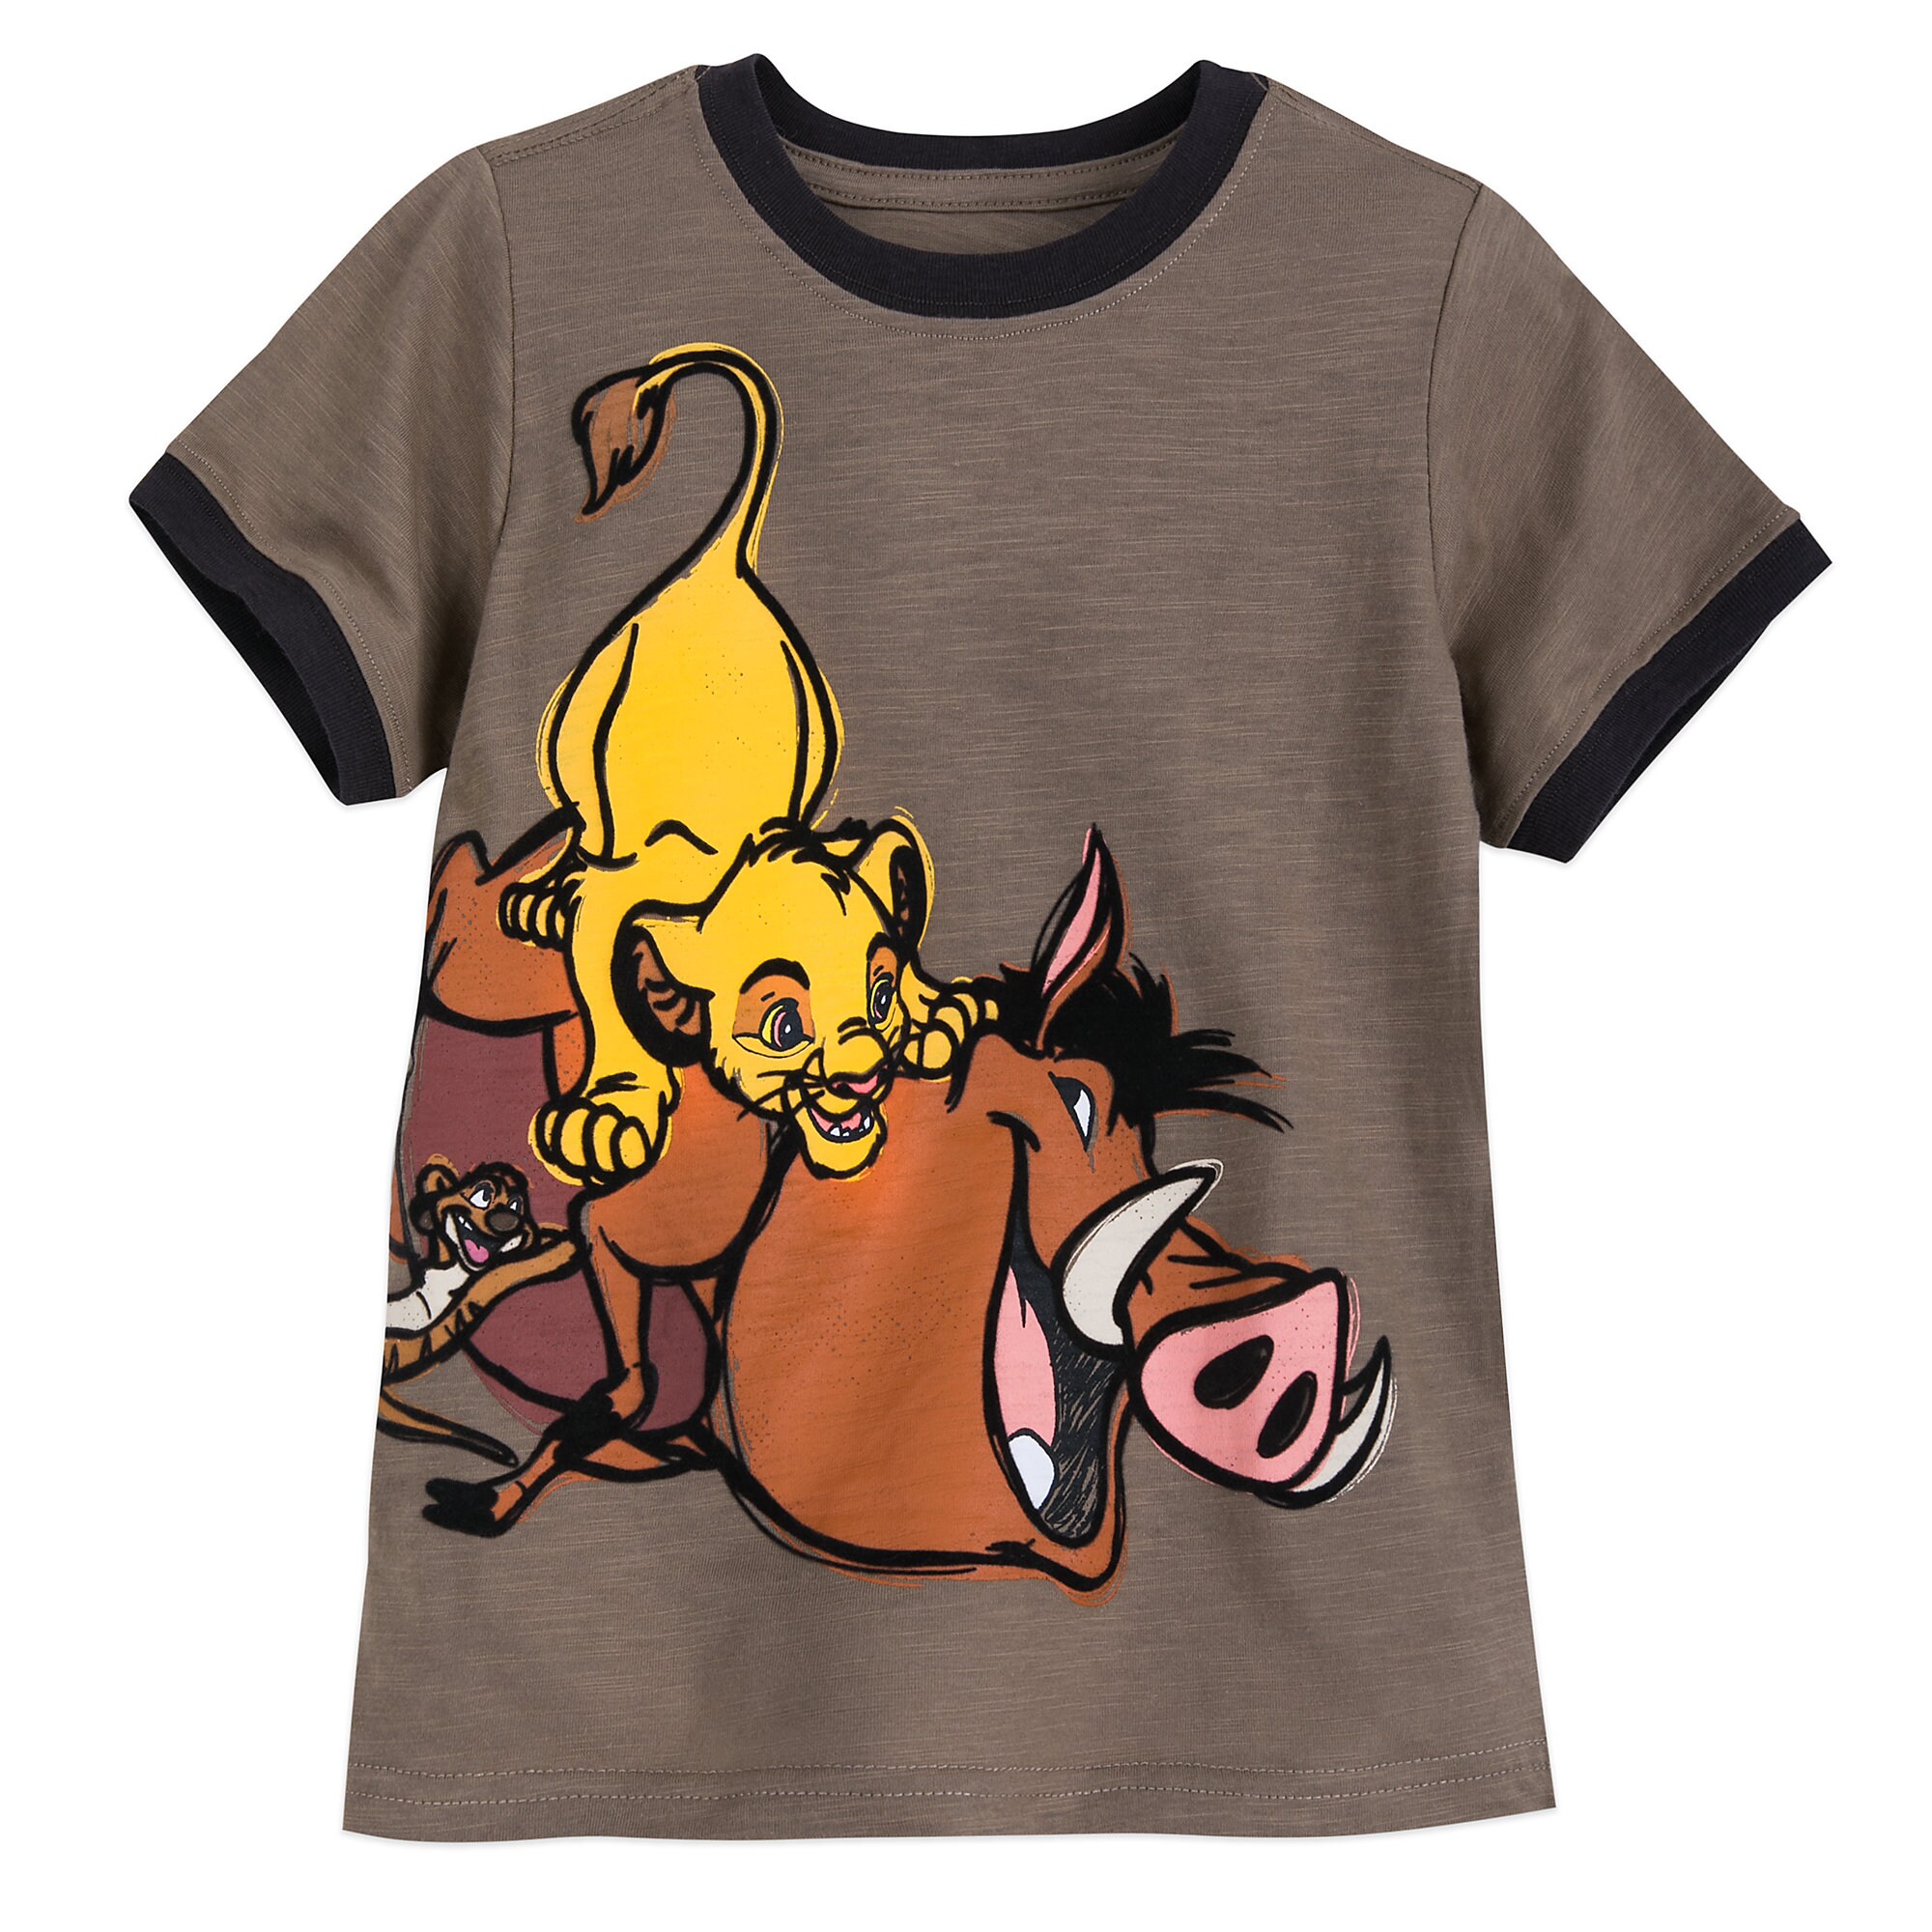 The Lion King Ringer T-Shirt for Boys